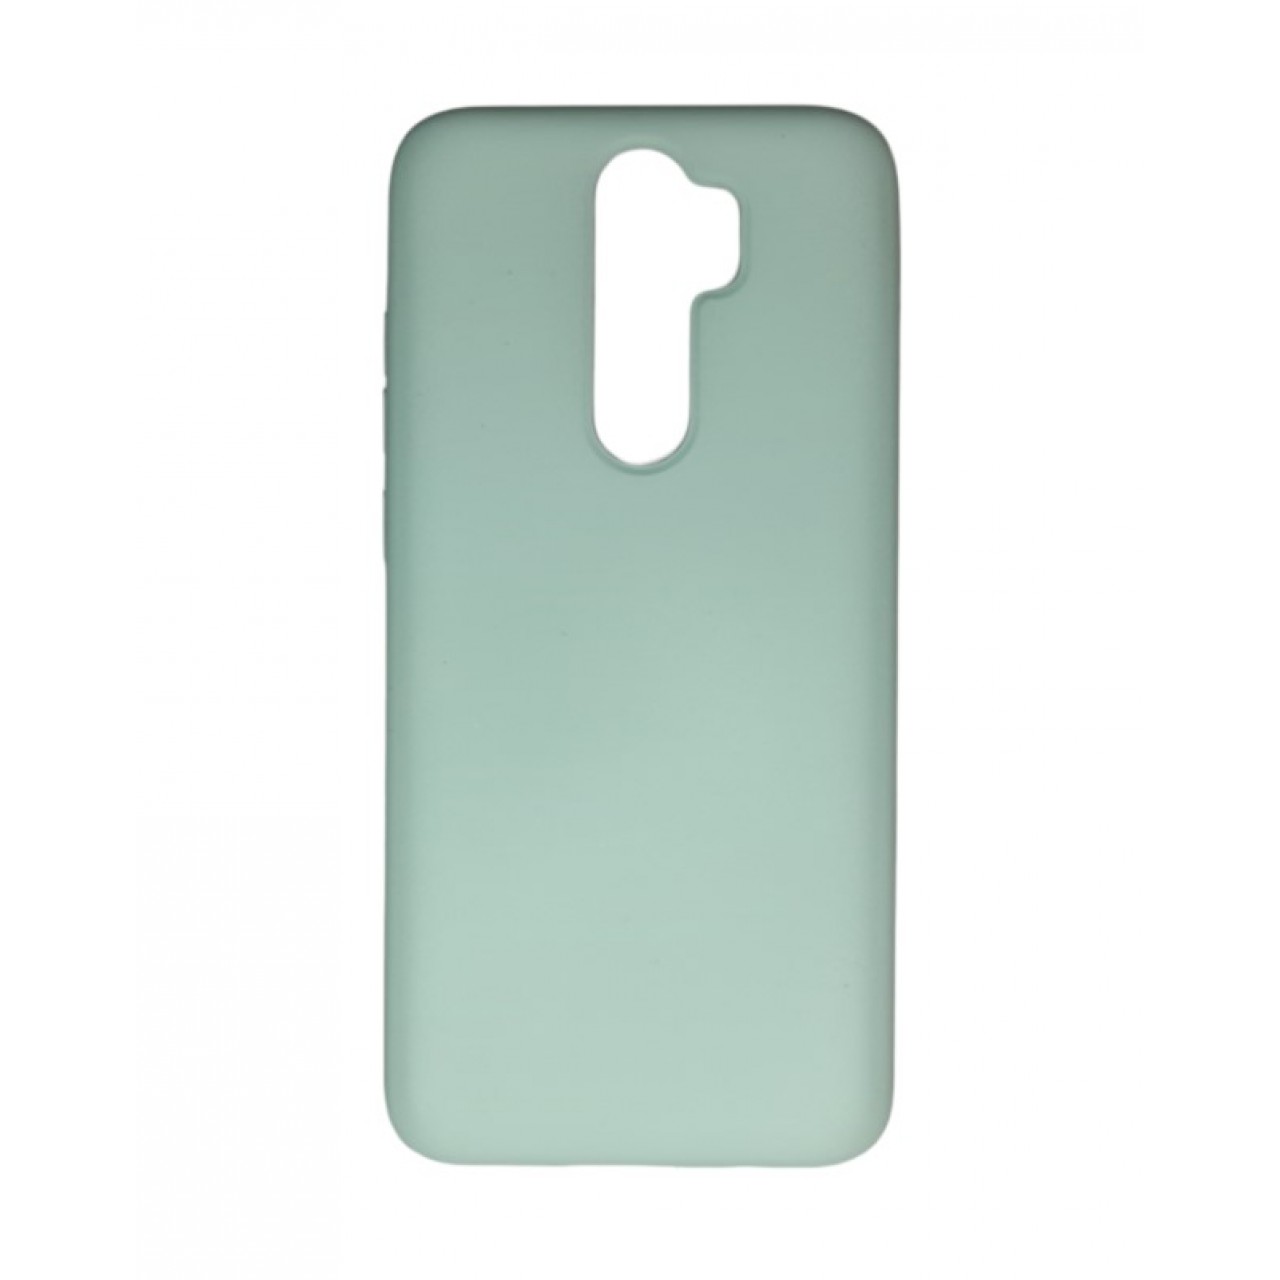 Θήκη Xiaomi Note 8 Pro Silicone soft-touch cover - 5146 - Πράσινο - ΟΕΜ